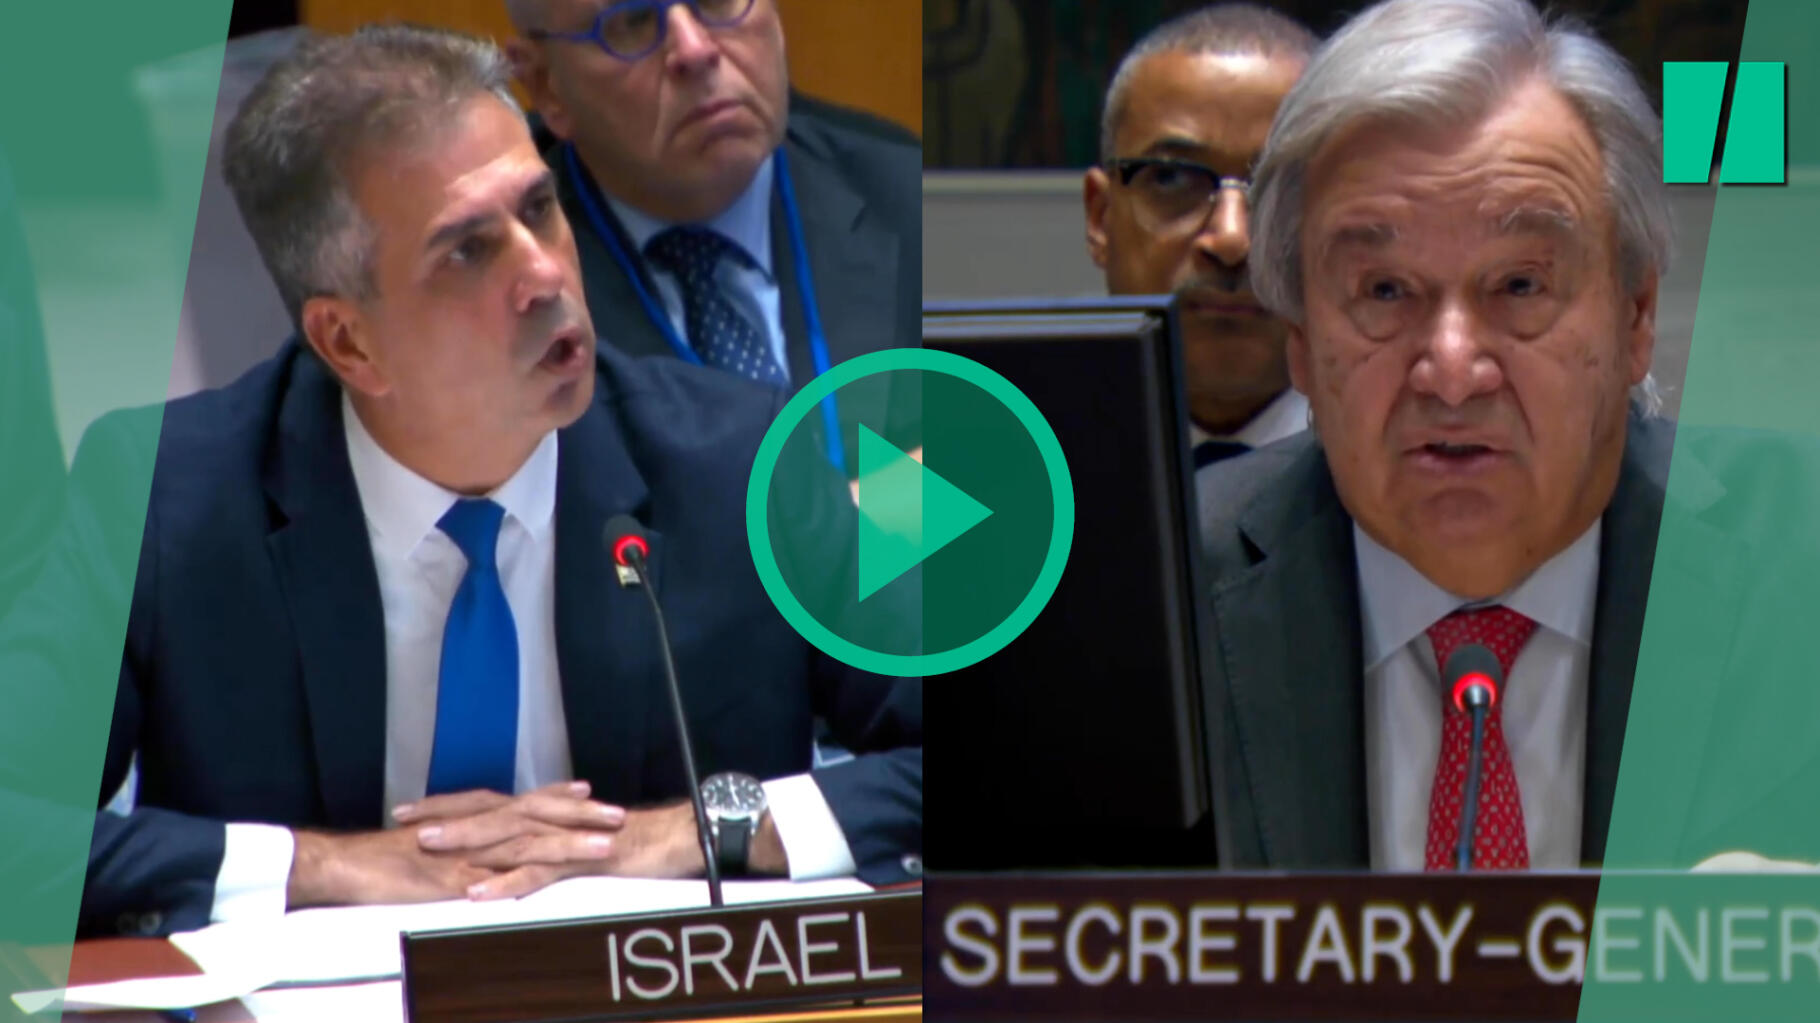 Wymiana broni między Antonio Guterresem a izraelskim ministrem Eli Cohenem w Organizacji Narodów Zjednoczonych